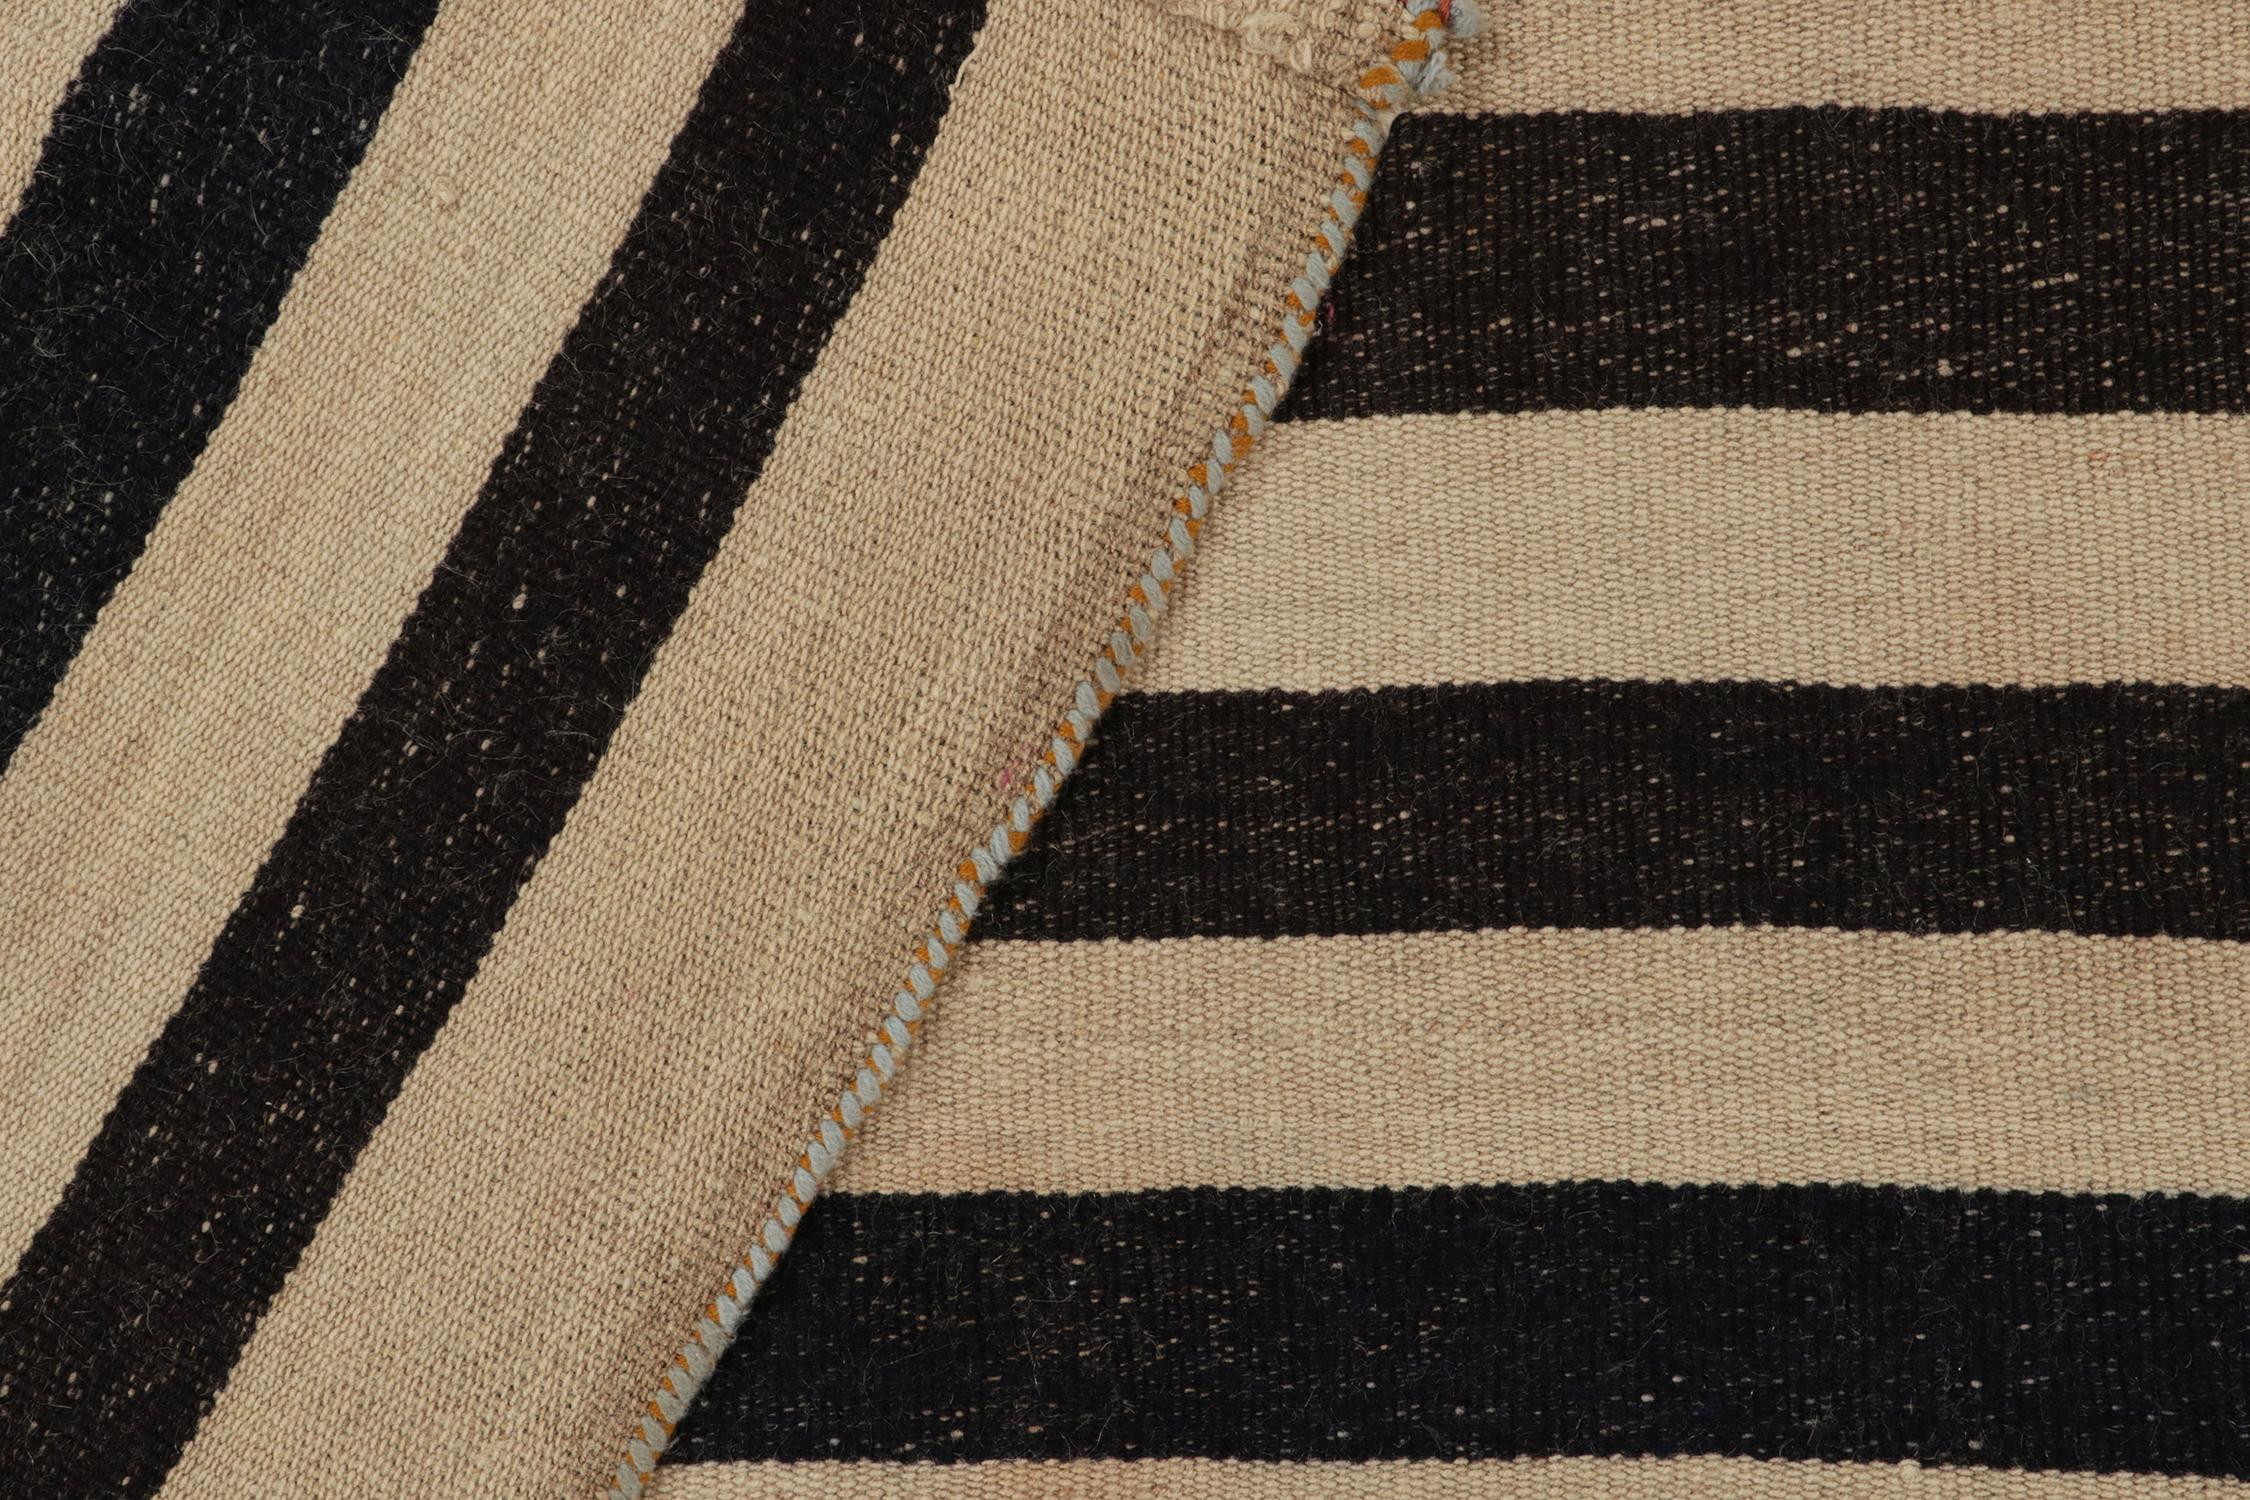 Vintage Turkish Kilim Rug in Beige-Brown & Black Stripe Pattern by Rug & Kilim For Sale 1